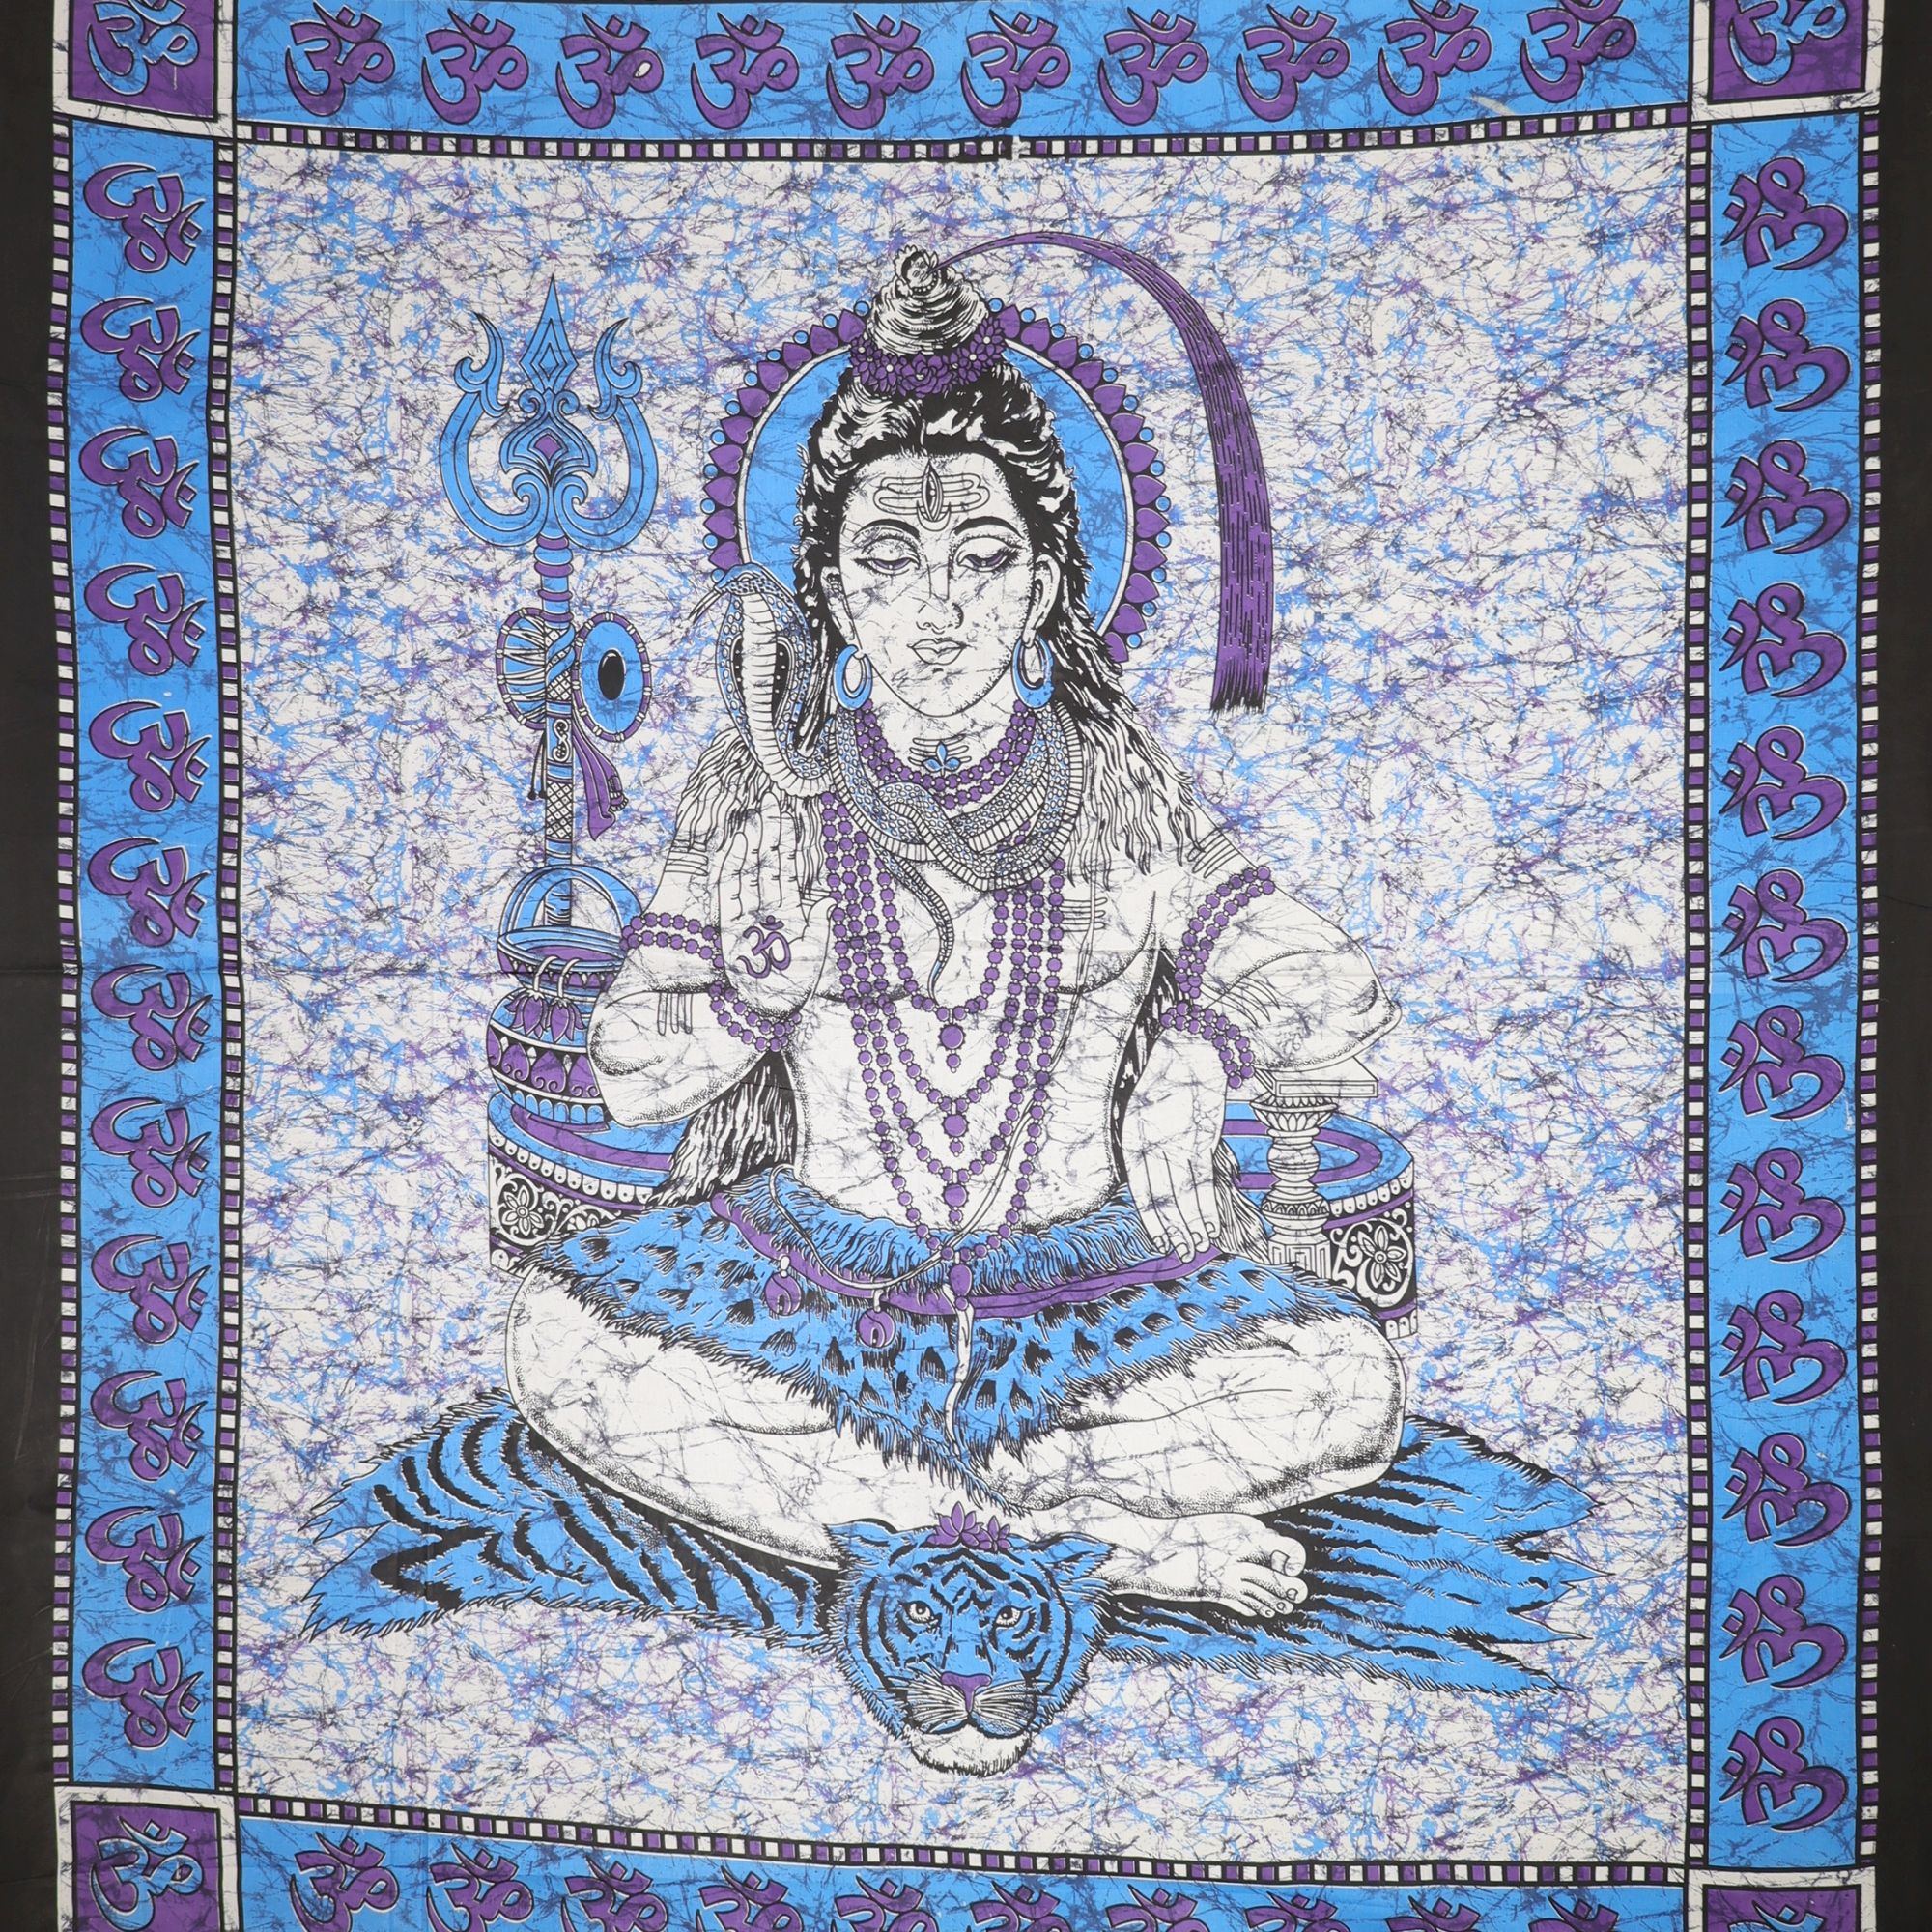 Wandtuch XXL 210x230 - Shiva - 100% Baumwolle - detailreicher indischer Druck - mehrfarbig - dekoratives Tuch, Wandbild, Tagesdecke, Bedcover, Vorhang, Picknick-Decke, Strandtuch